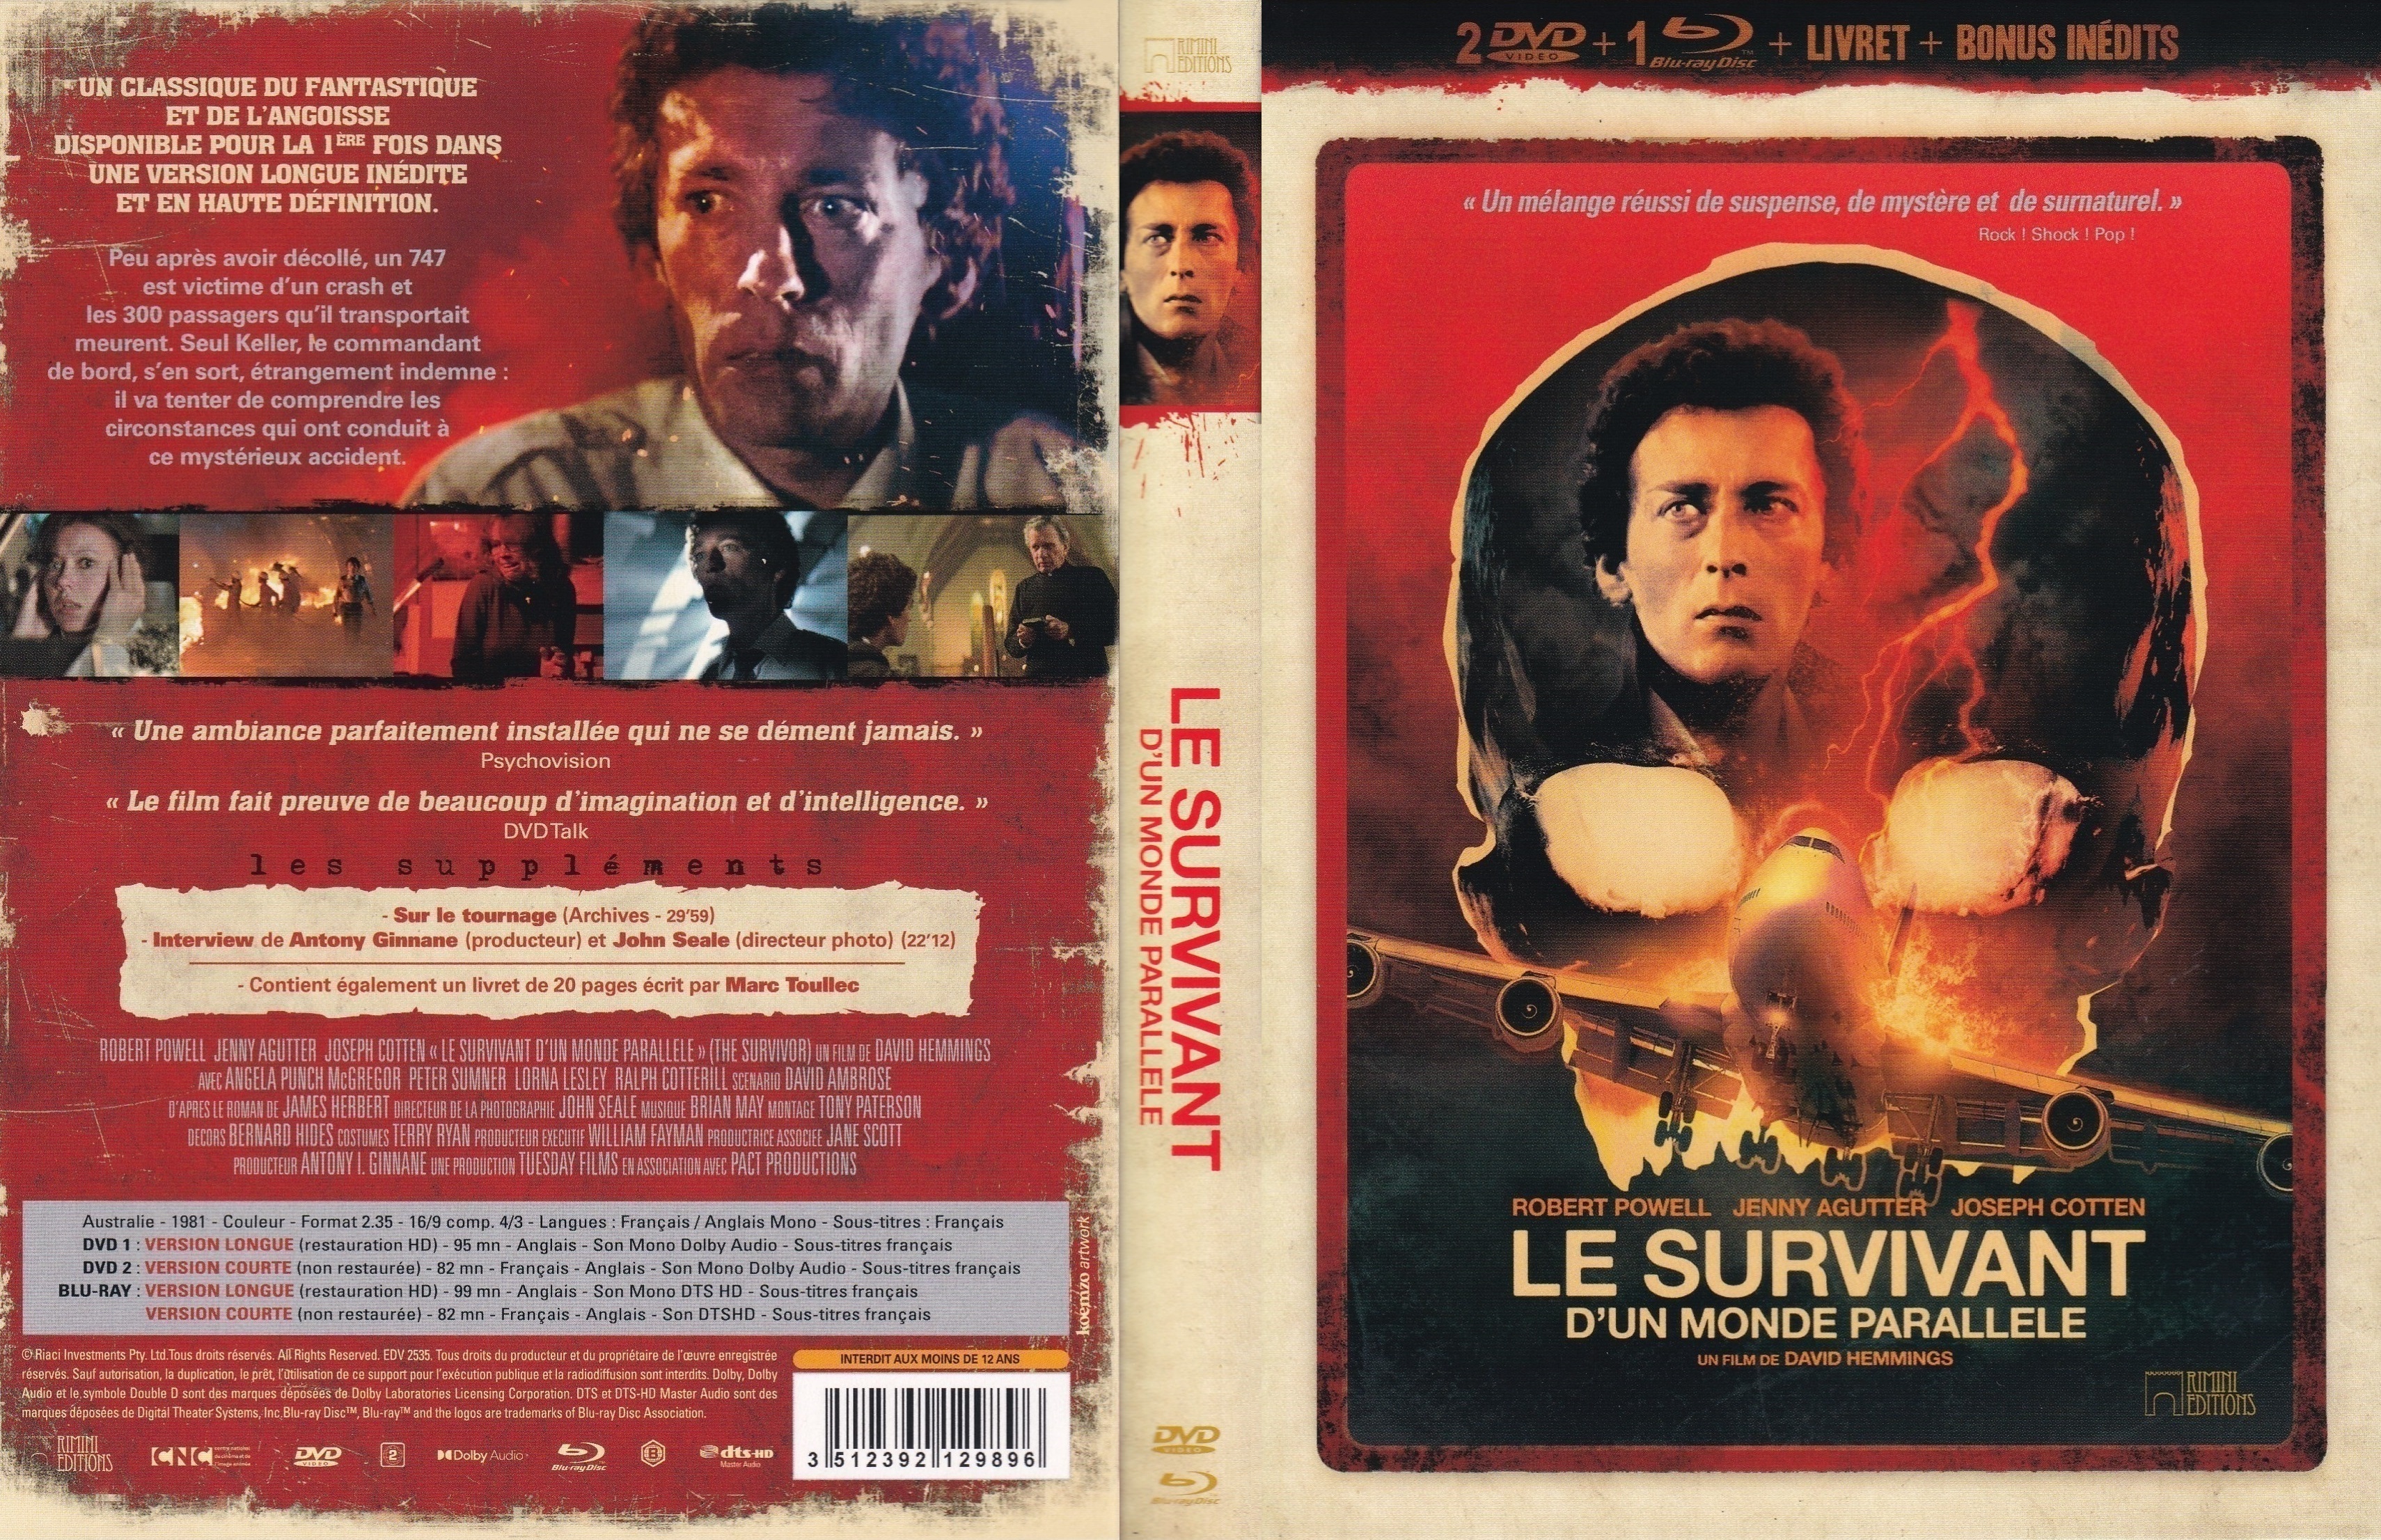 Jaquette DVD Le survivant d